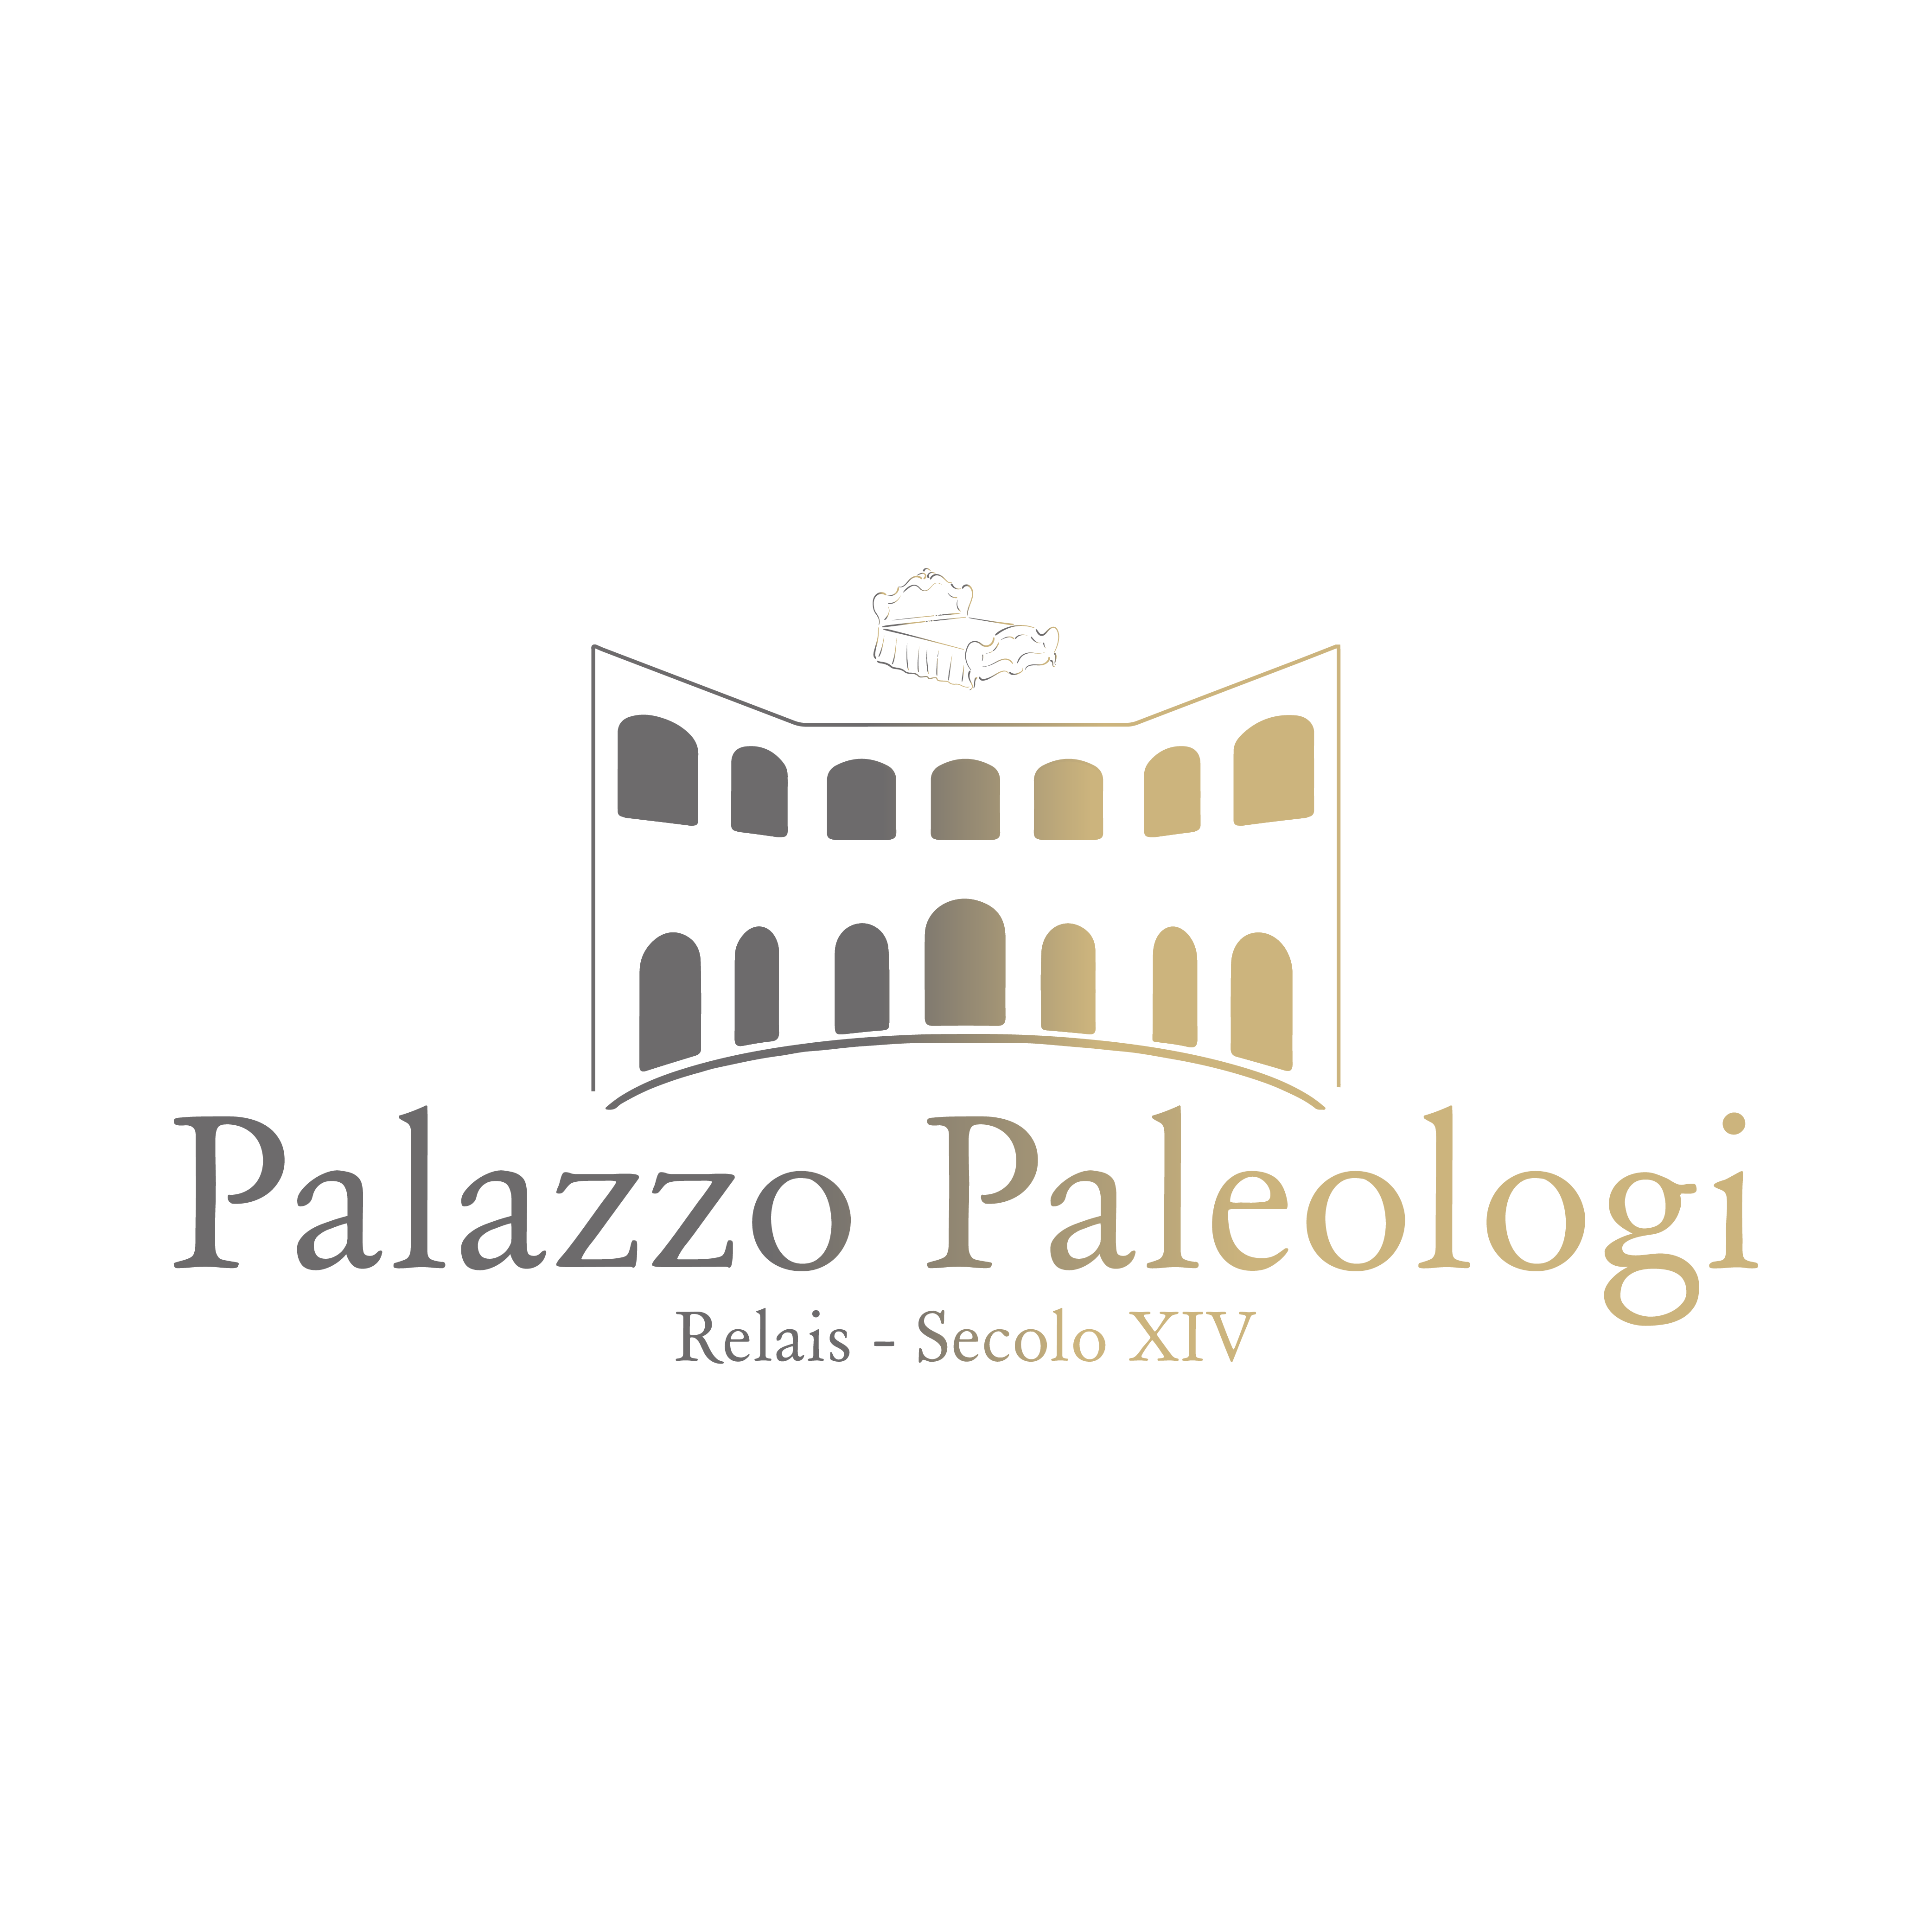 Palazzo Paleologi Logo